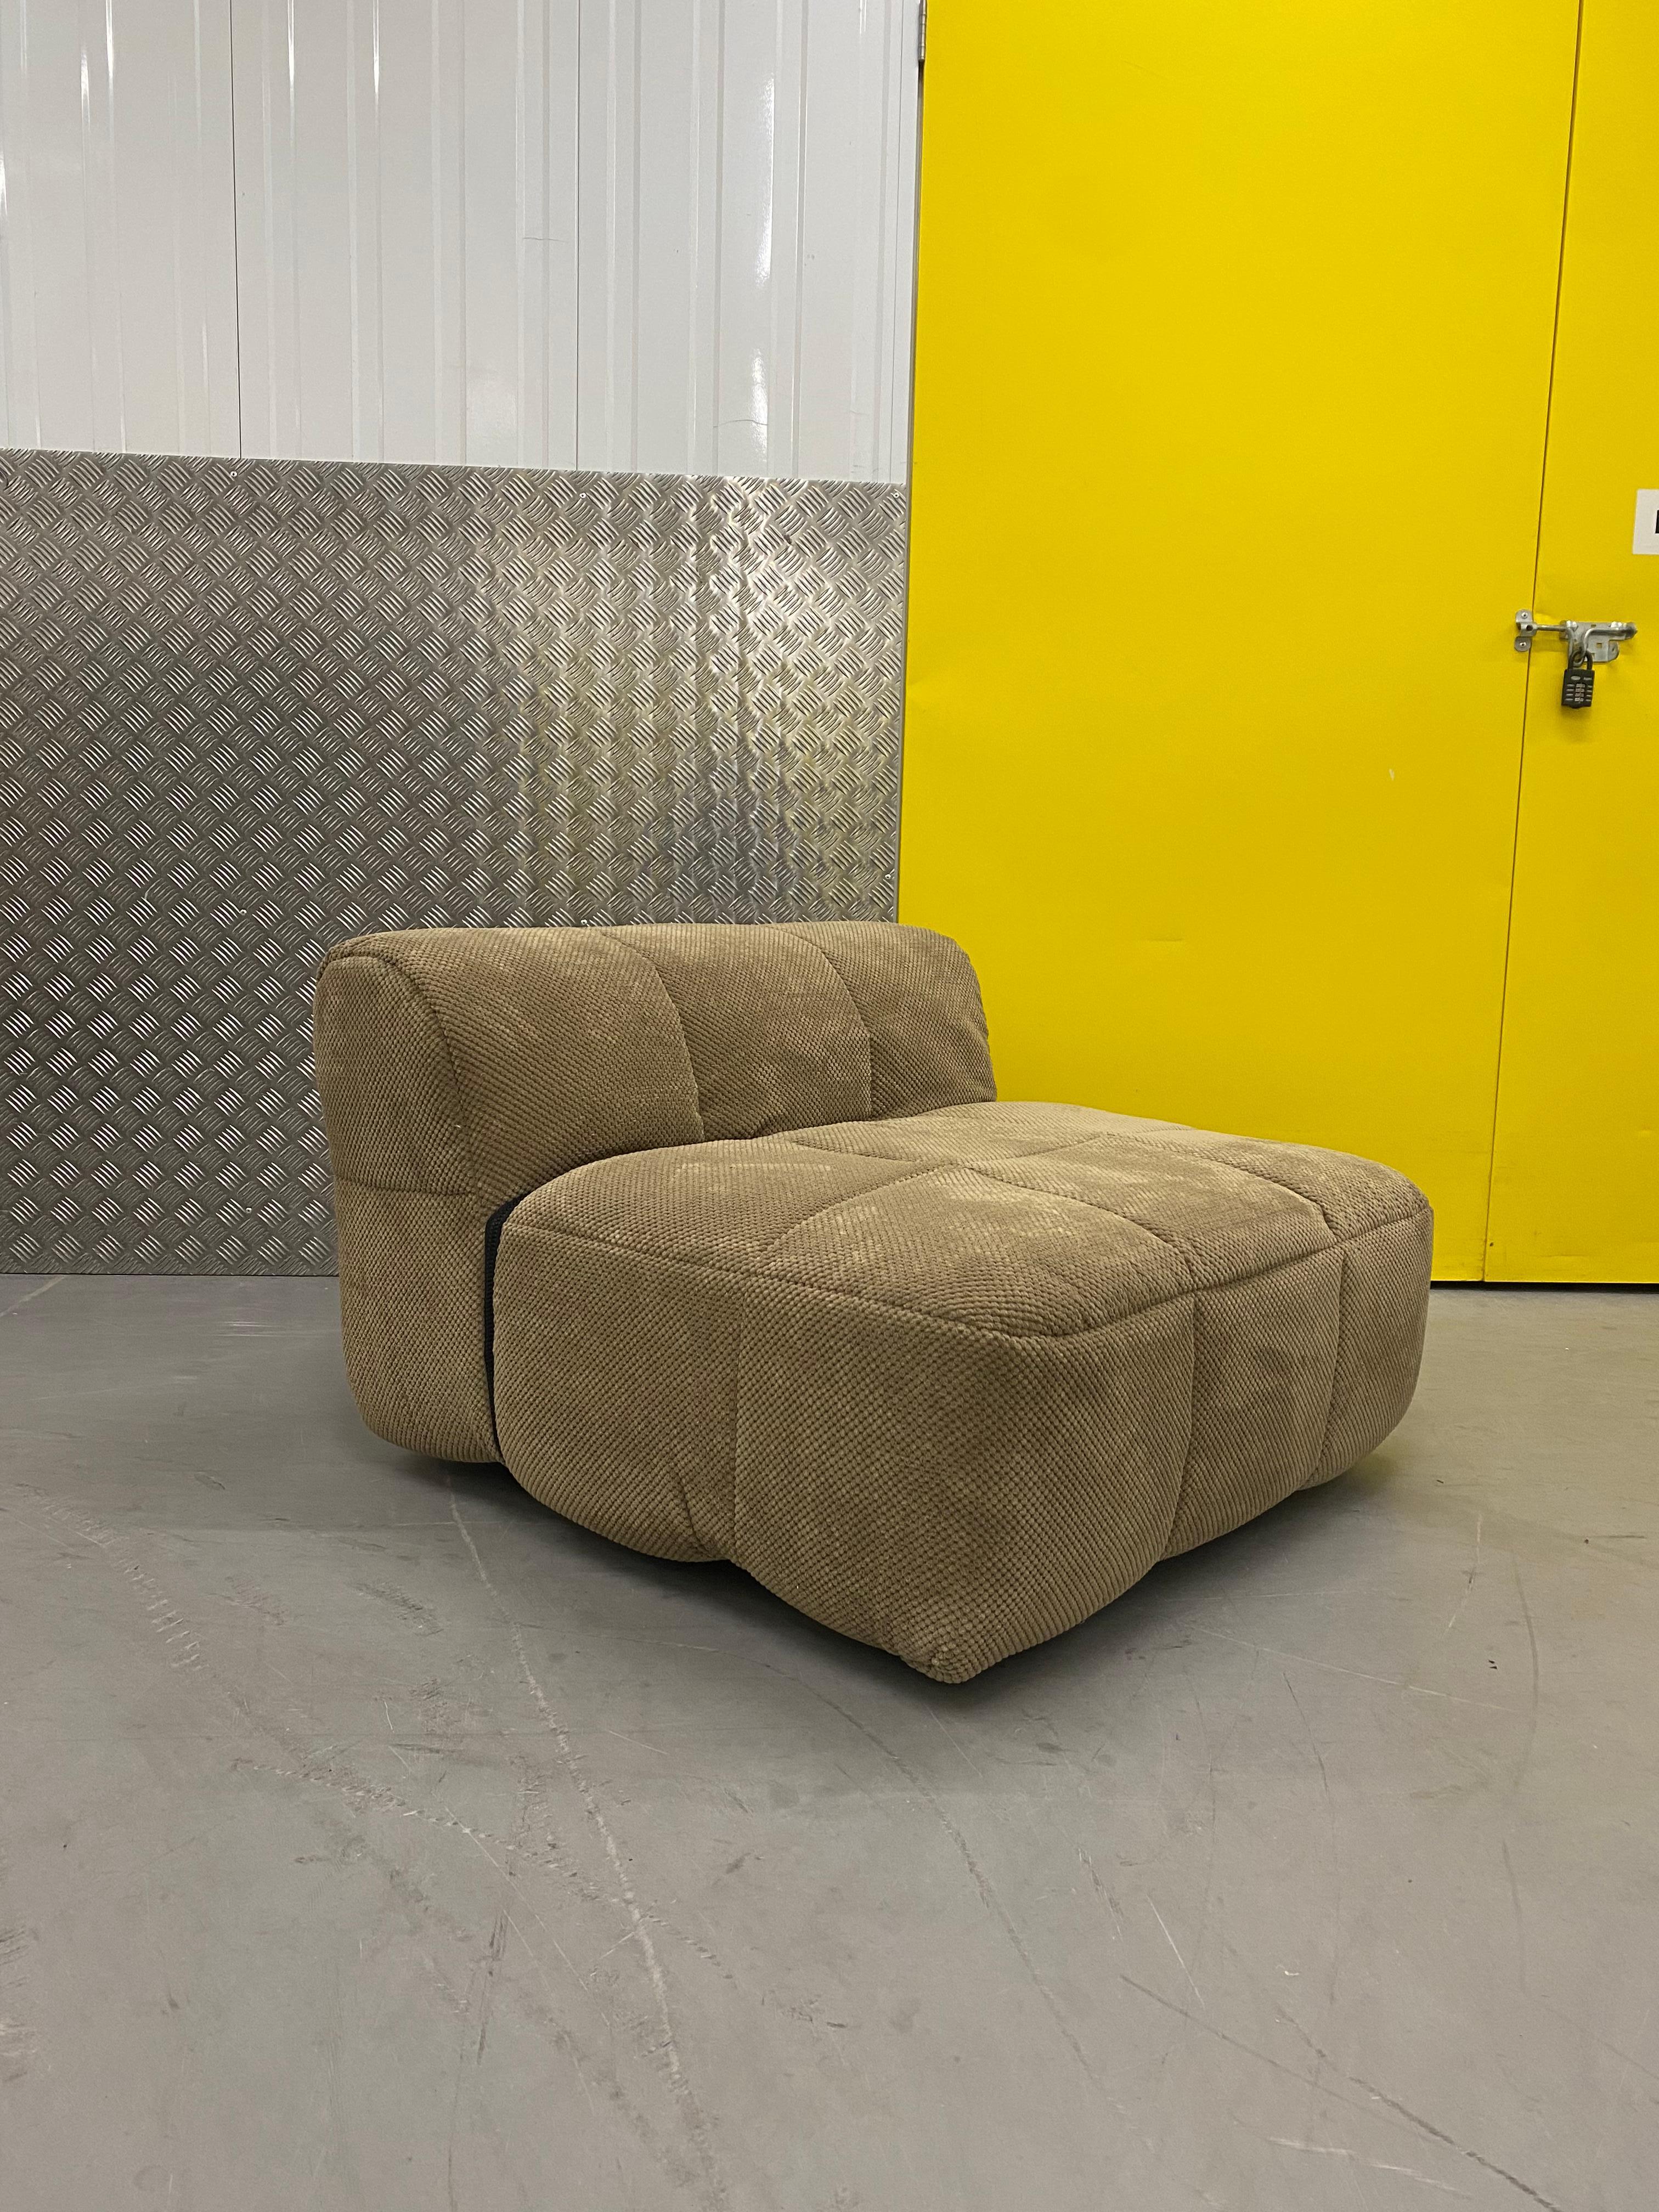 Modular Strips Sofa von Cini Boeri für Arflex. 

Mit diesem Sitzsystem revolutionierte der Architekt den Möbelmarkt und wurde 1979 mit dem Compasso d'Oro ausgezeichnet. Das Sofa zeichnet sich durch ein abnehmbares Steppfutter aus, bei dem die